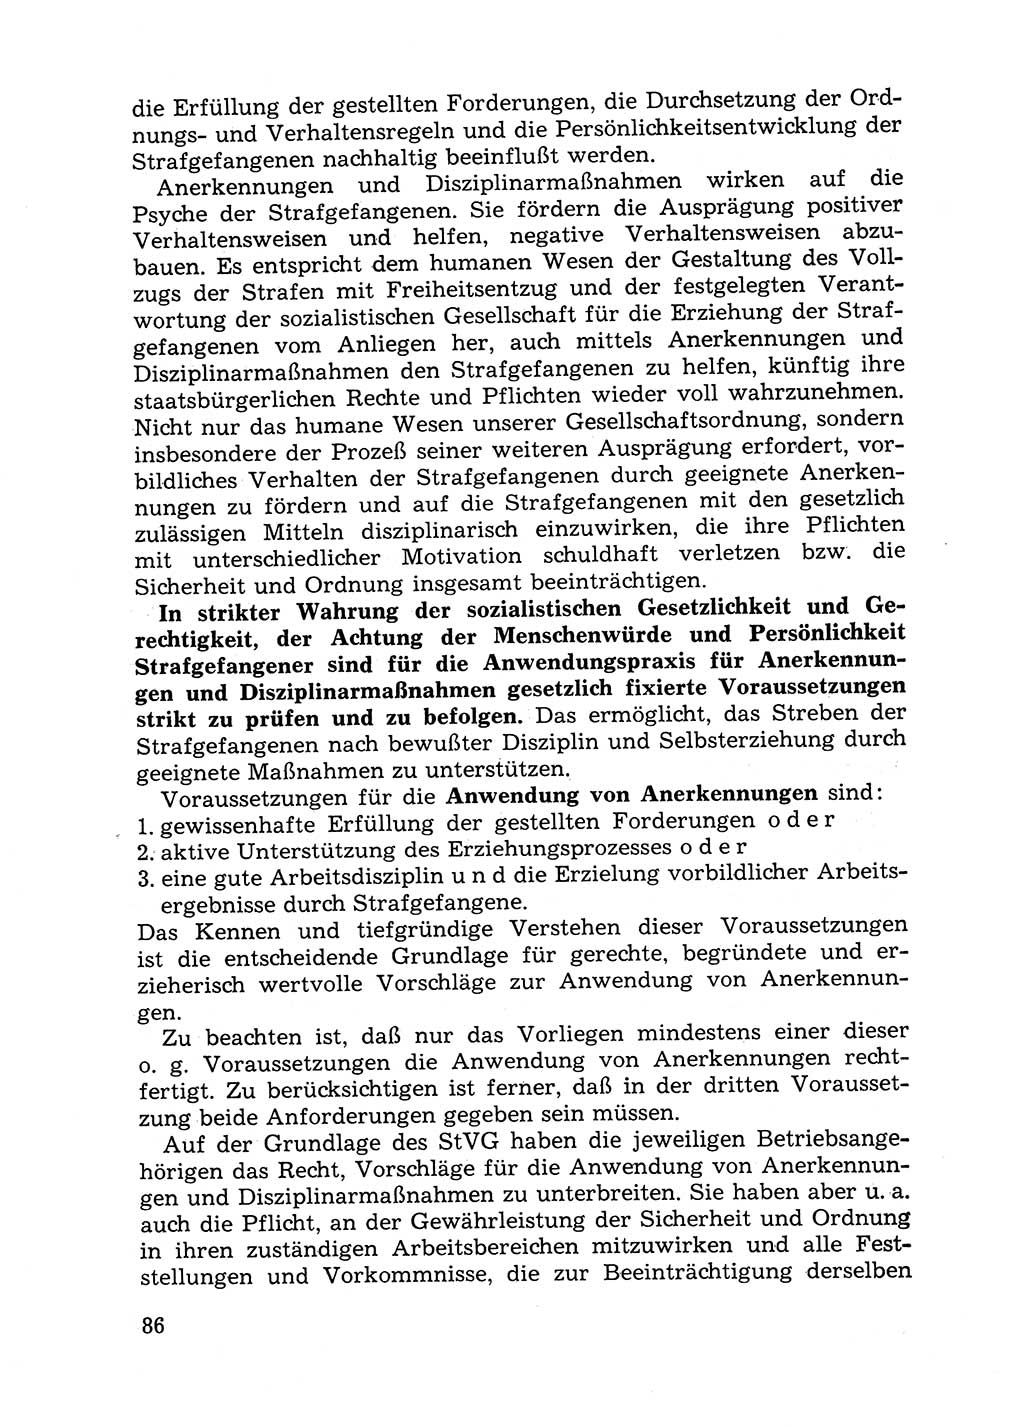 Handbuch für Betriebsangehörige, Abteilung Strafvollzug (SV) [Ministerium des Innern (MdI) Deutsche Demokratische Republik (DDR)] 1981, Seite 86 (Hb. BA Abt. SV MdI DDR 1981, S. 86)